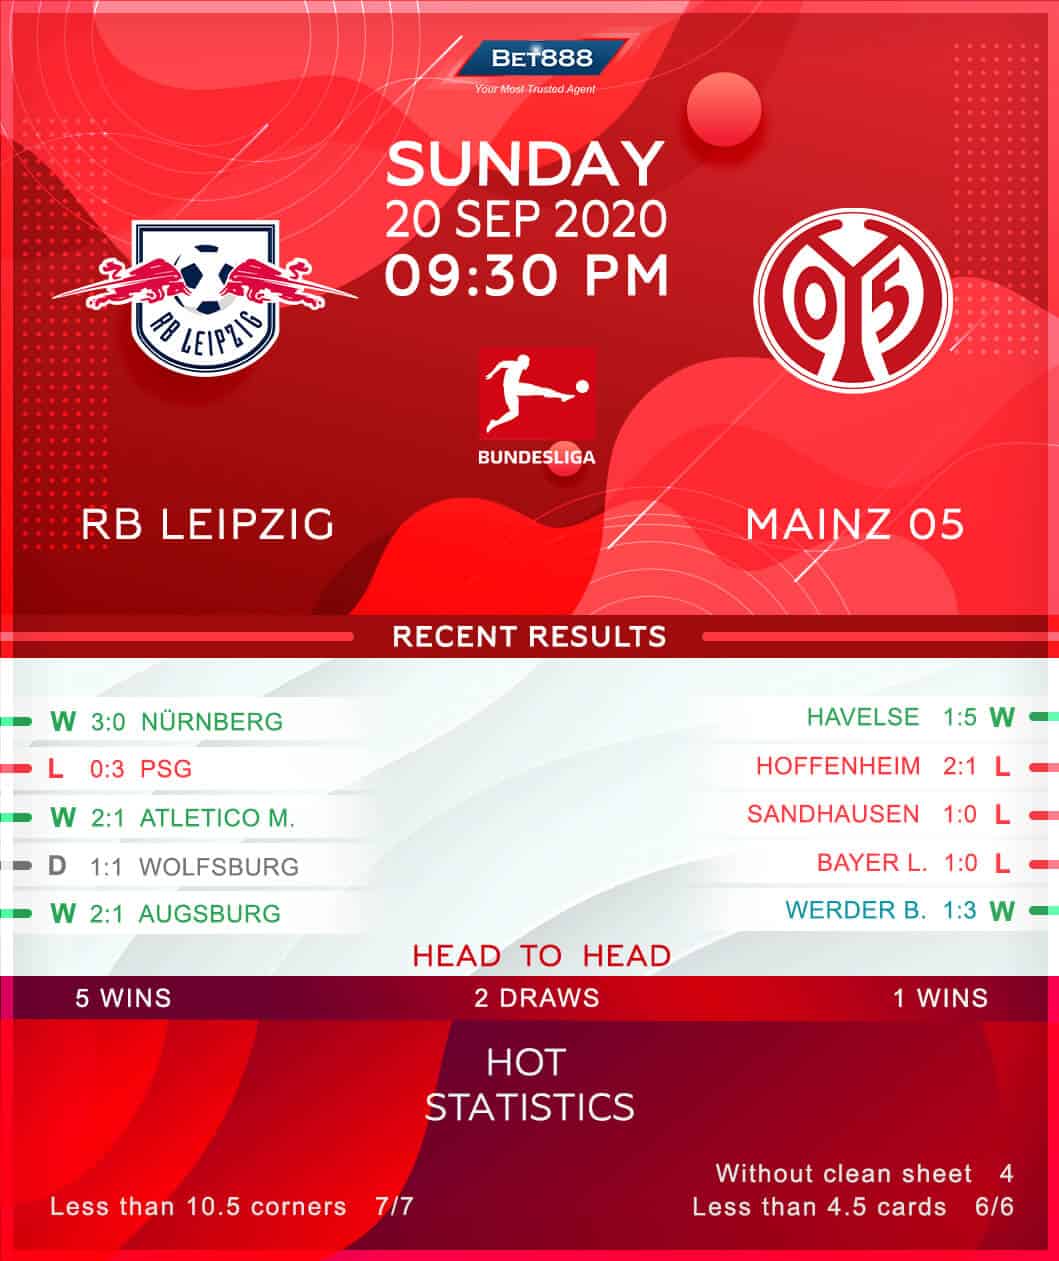 RB Leipzig vs Mainz 05 20/09/20